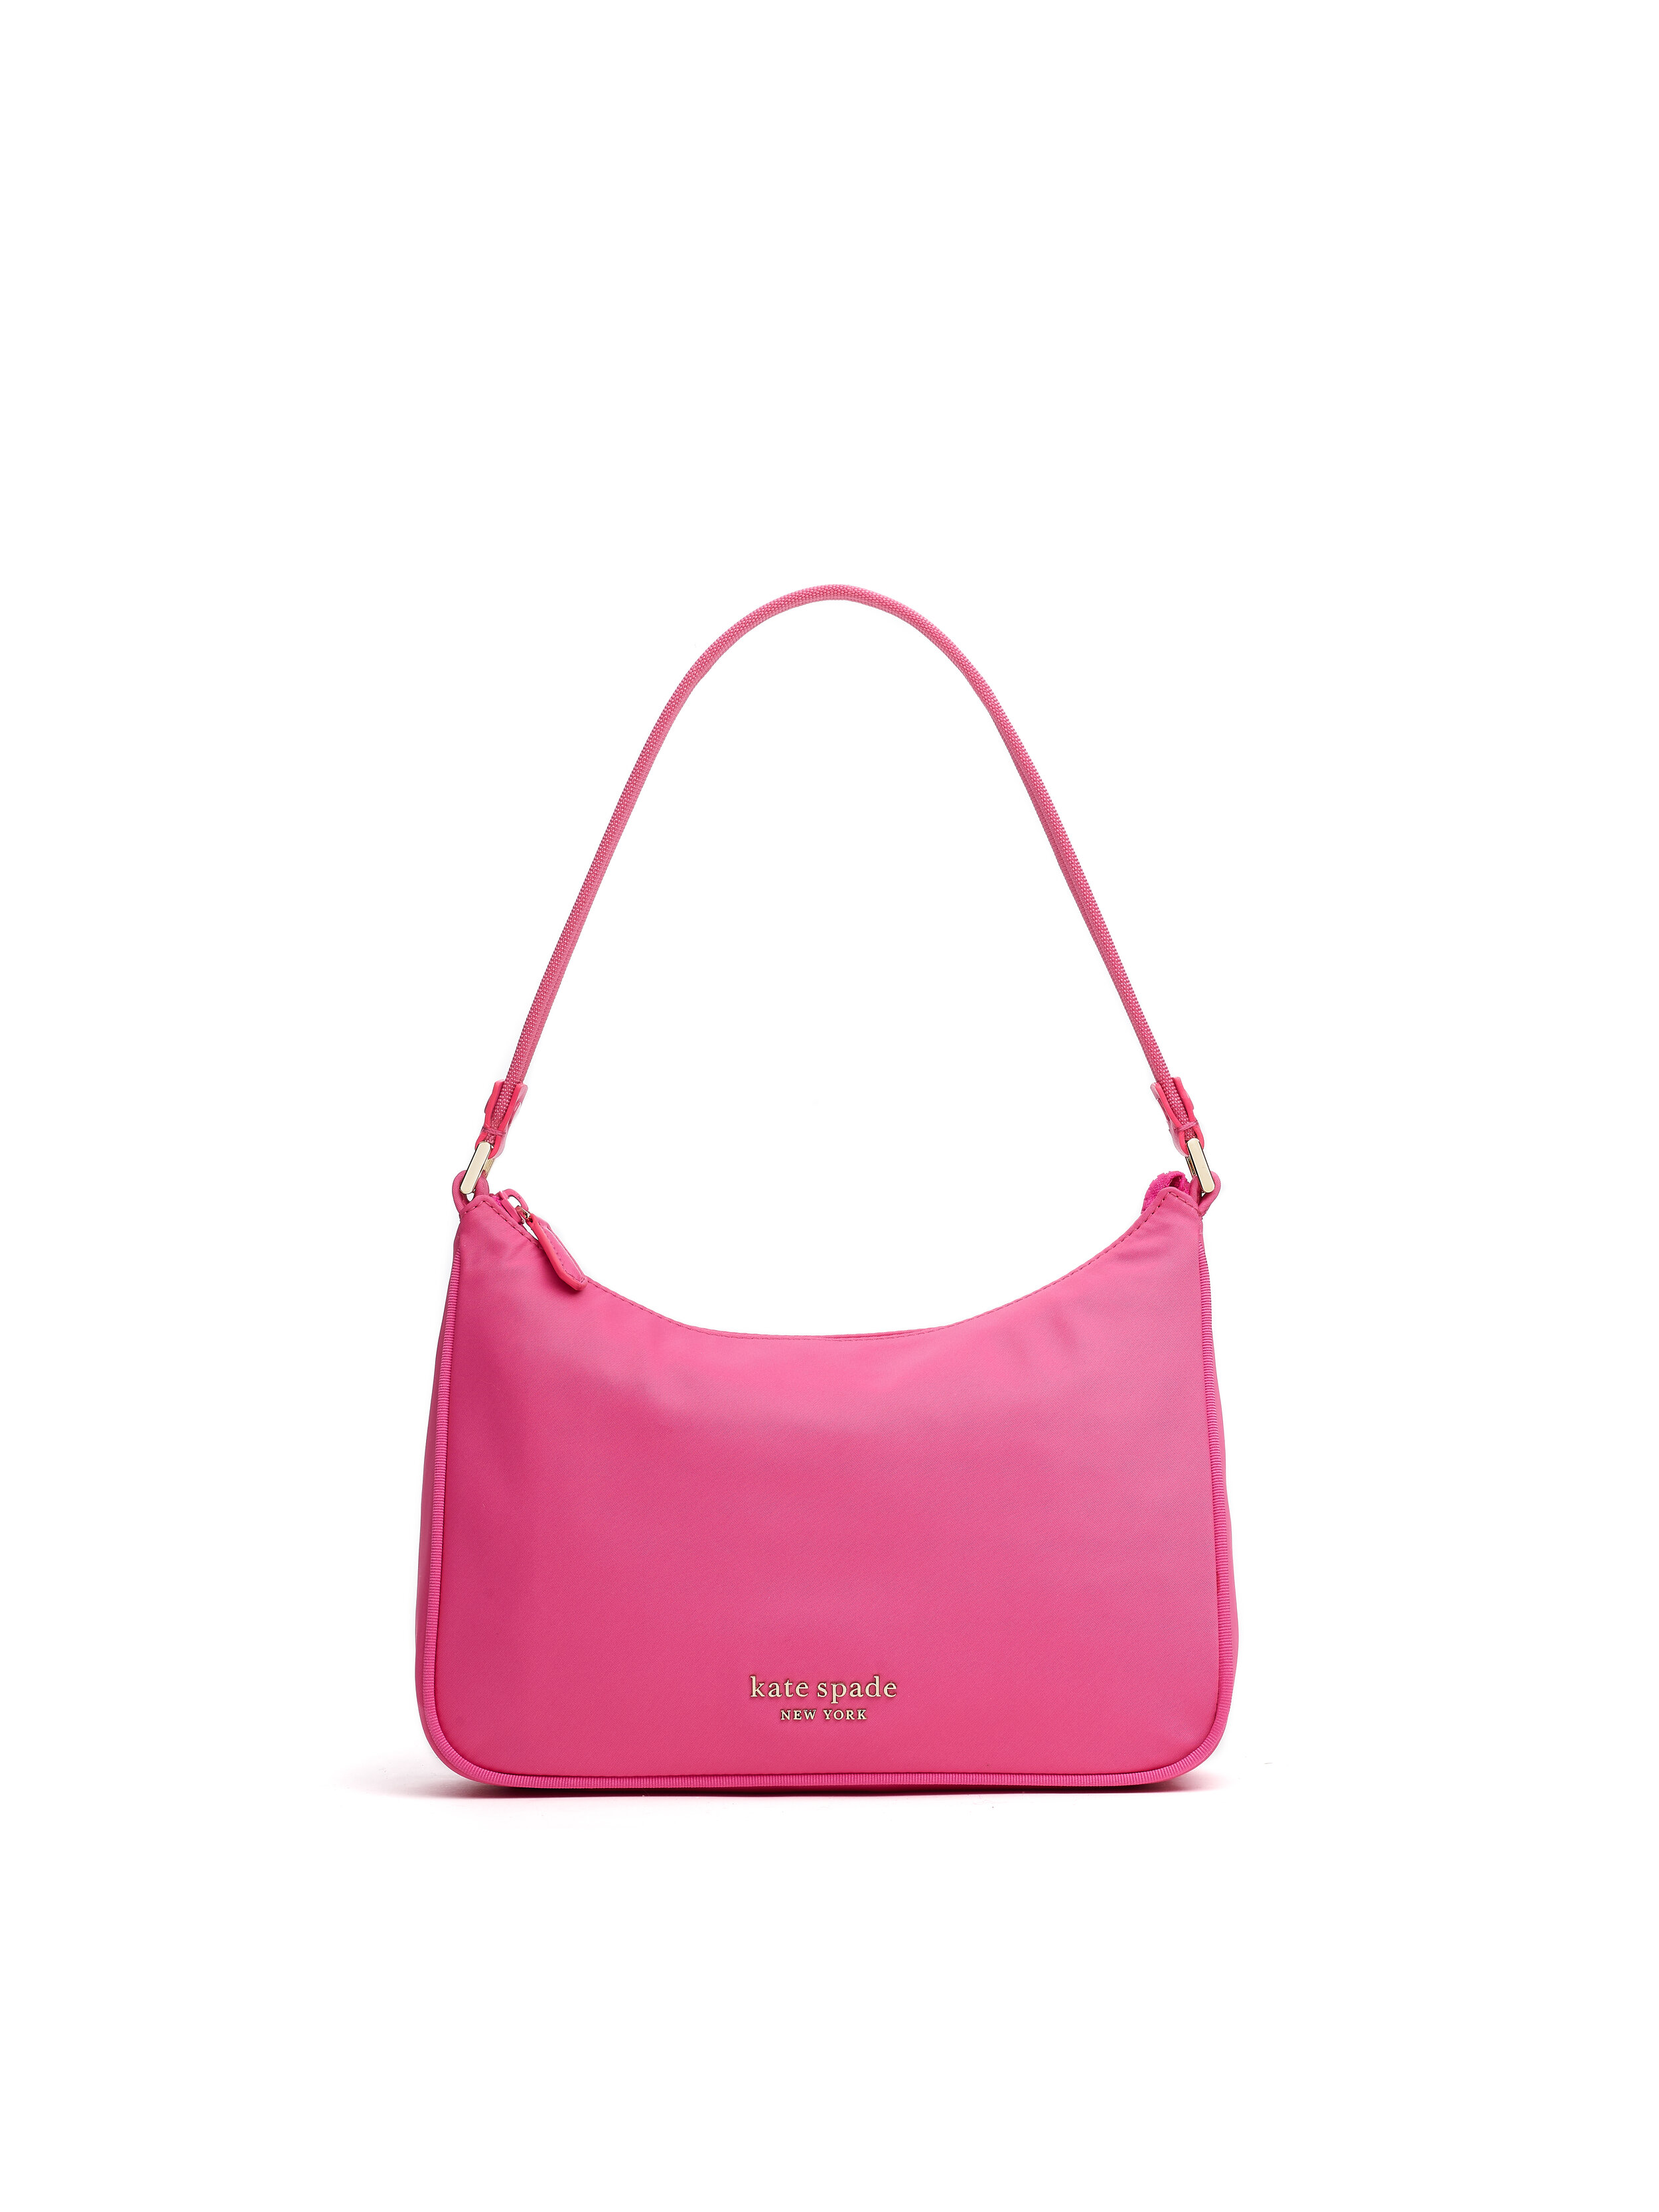 Kate Spade New York Relaunches The Iconic Nylon Sam Handbag For Summer ...